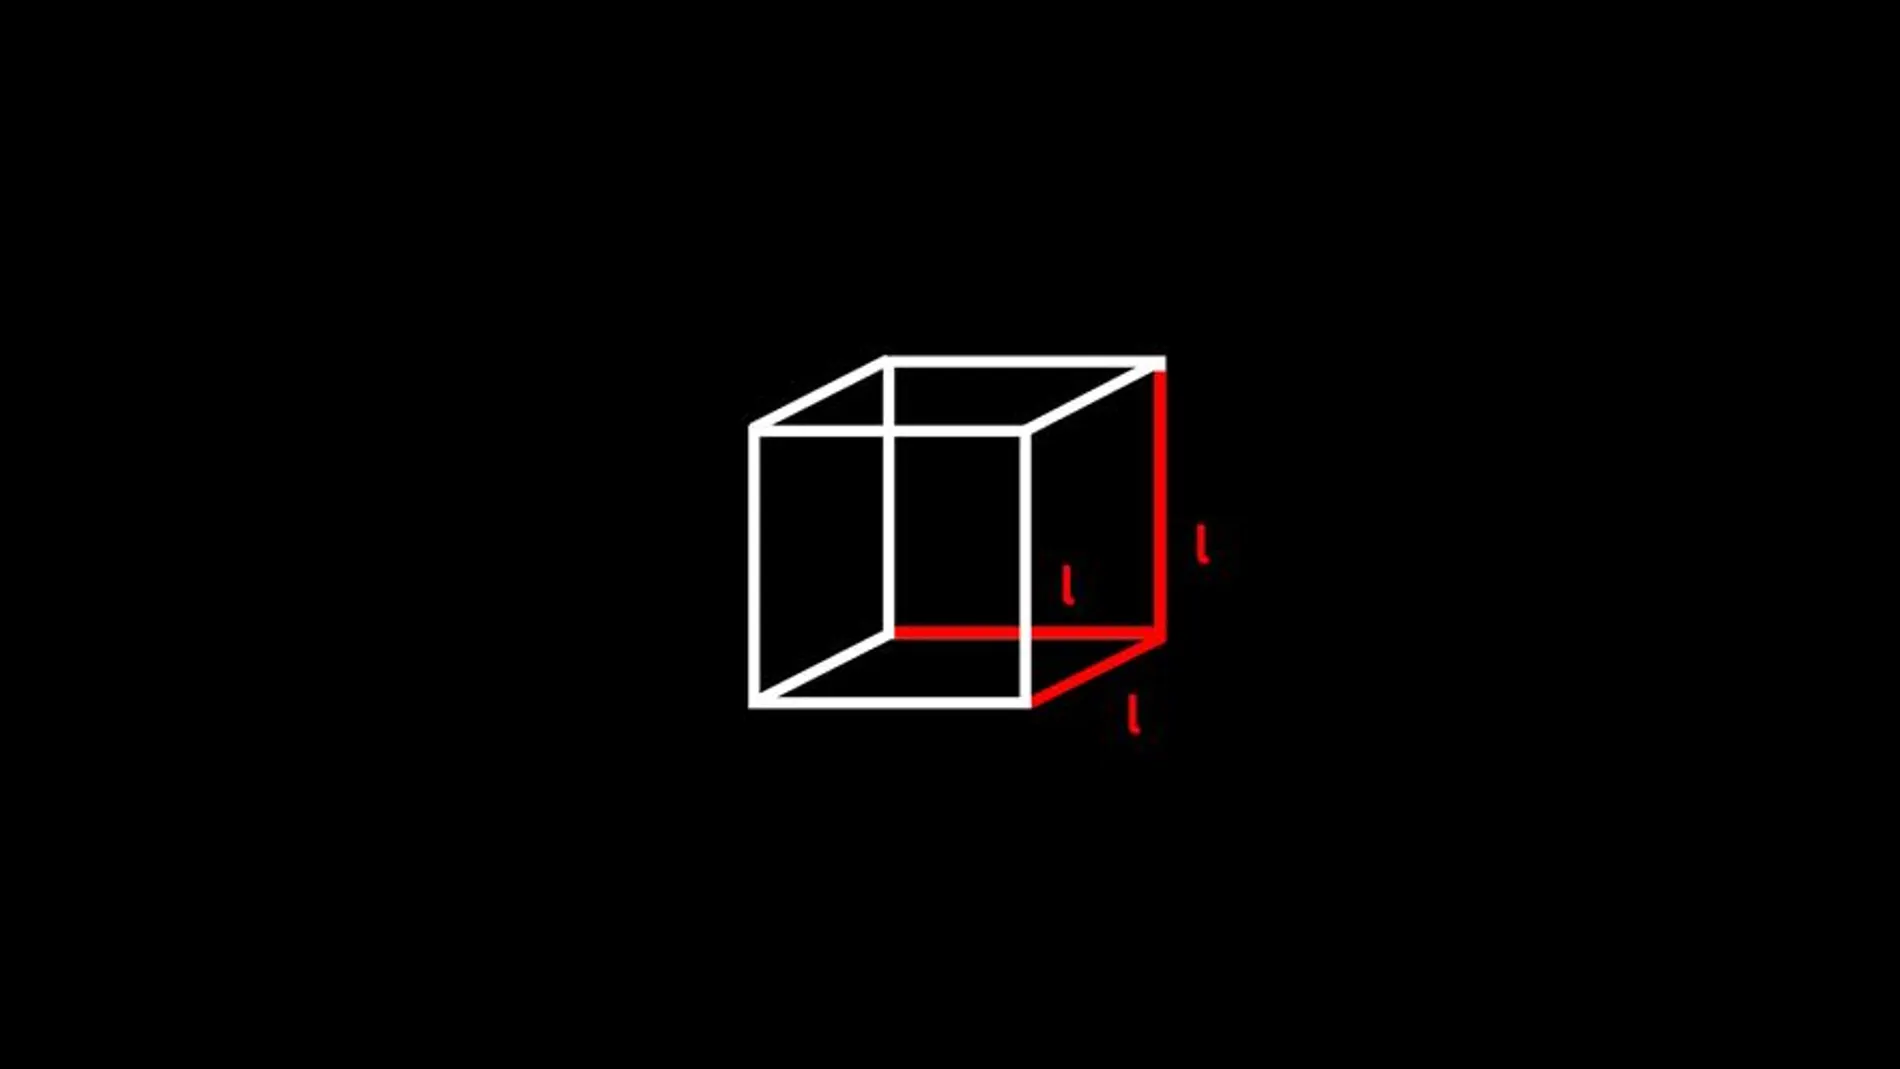 ¿Cómo calcular el volumen de un cubo?